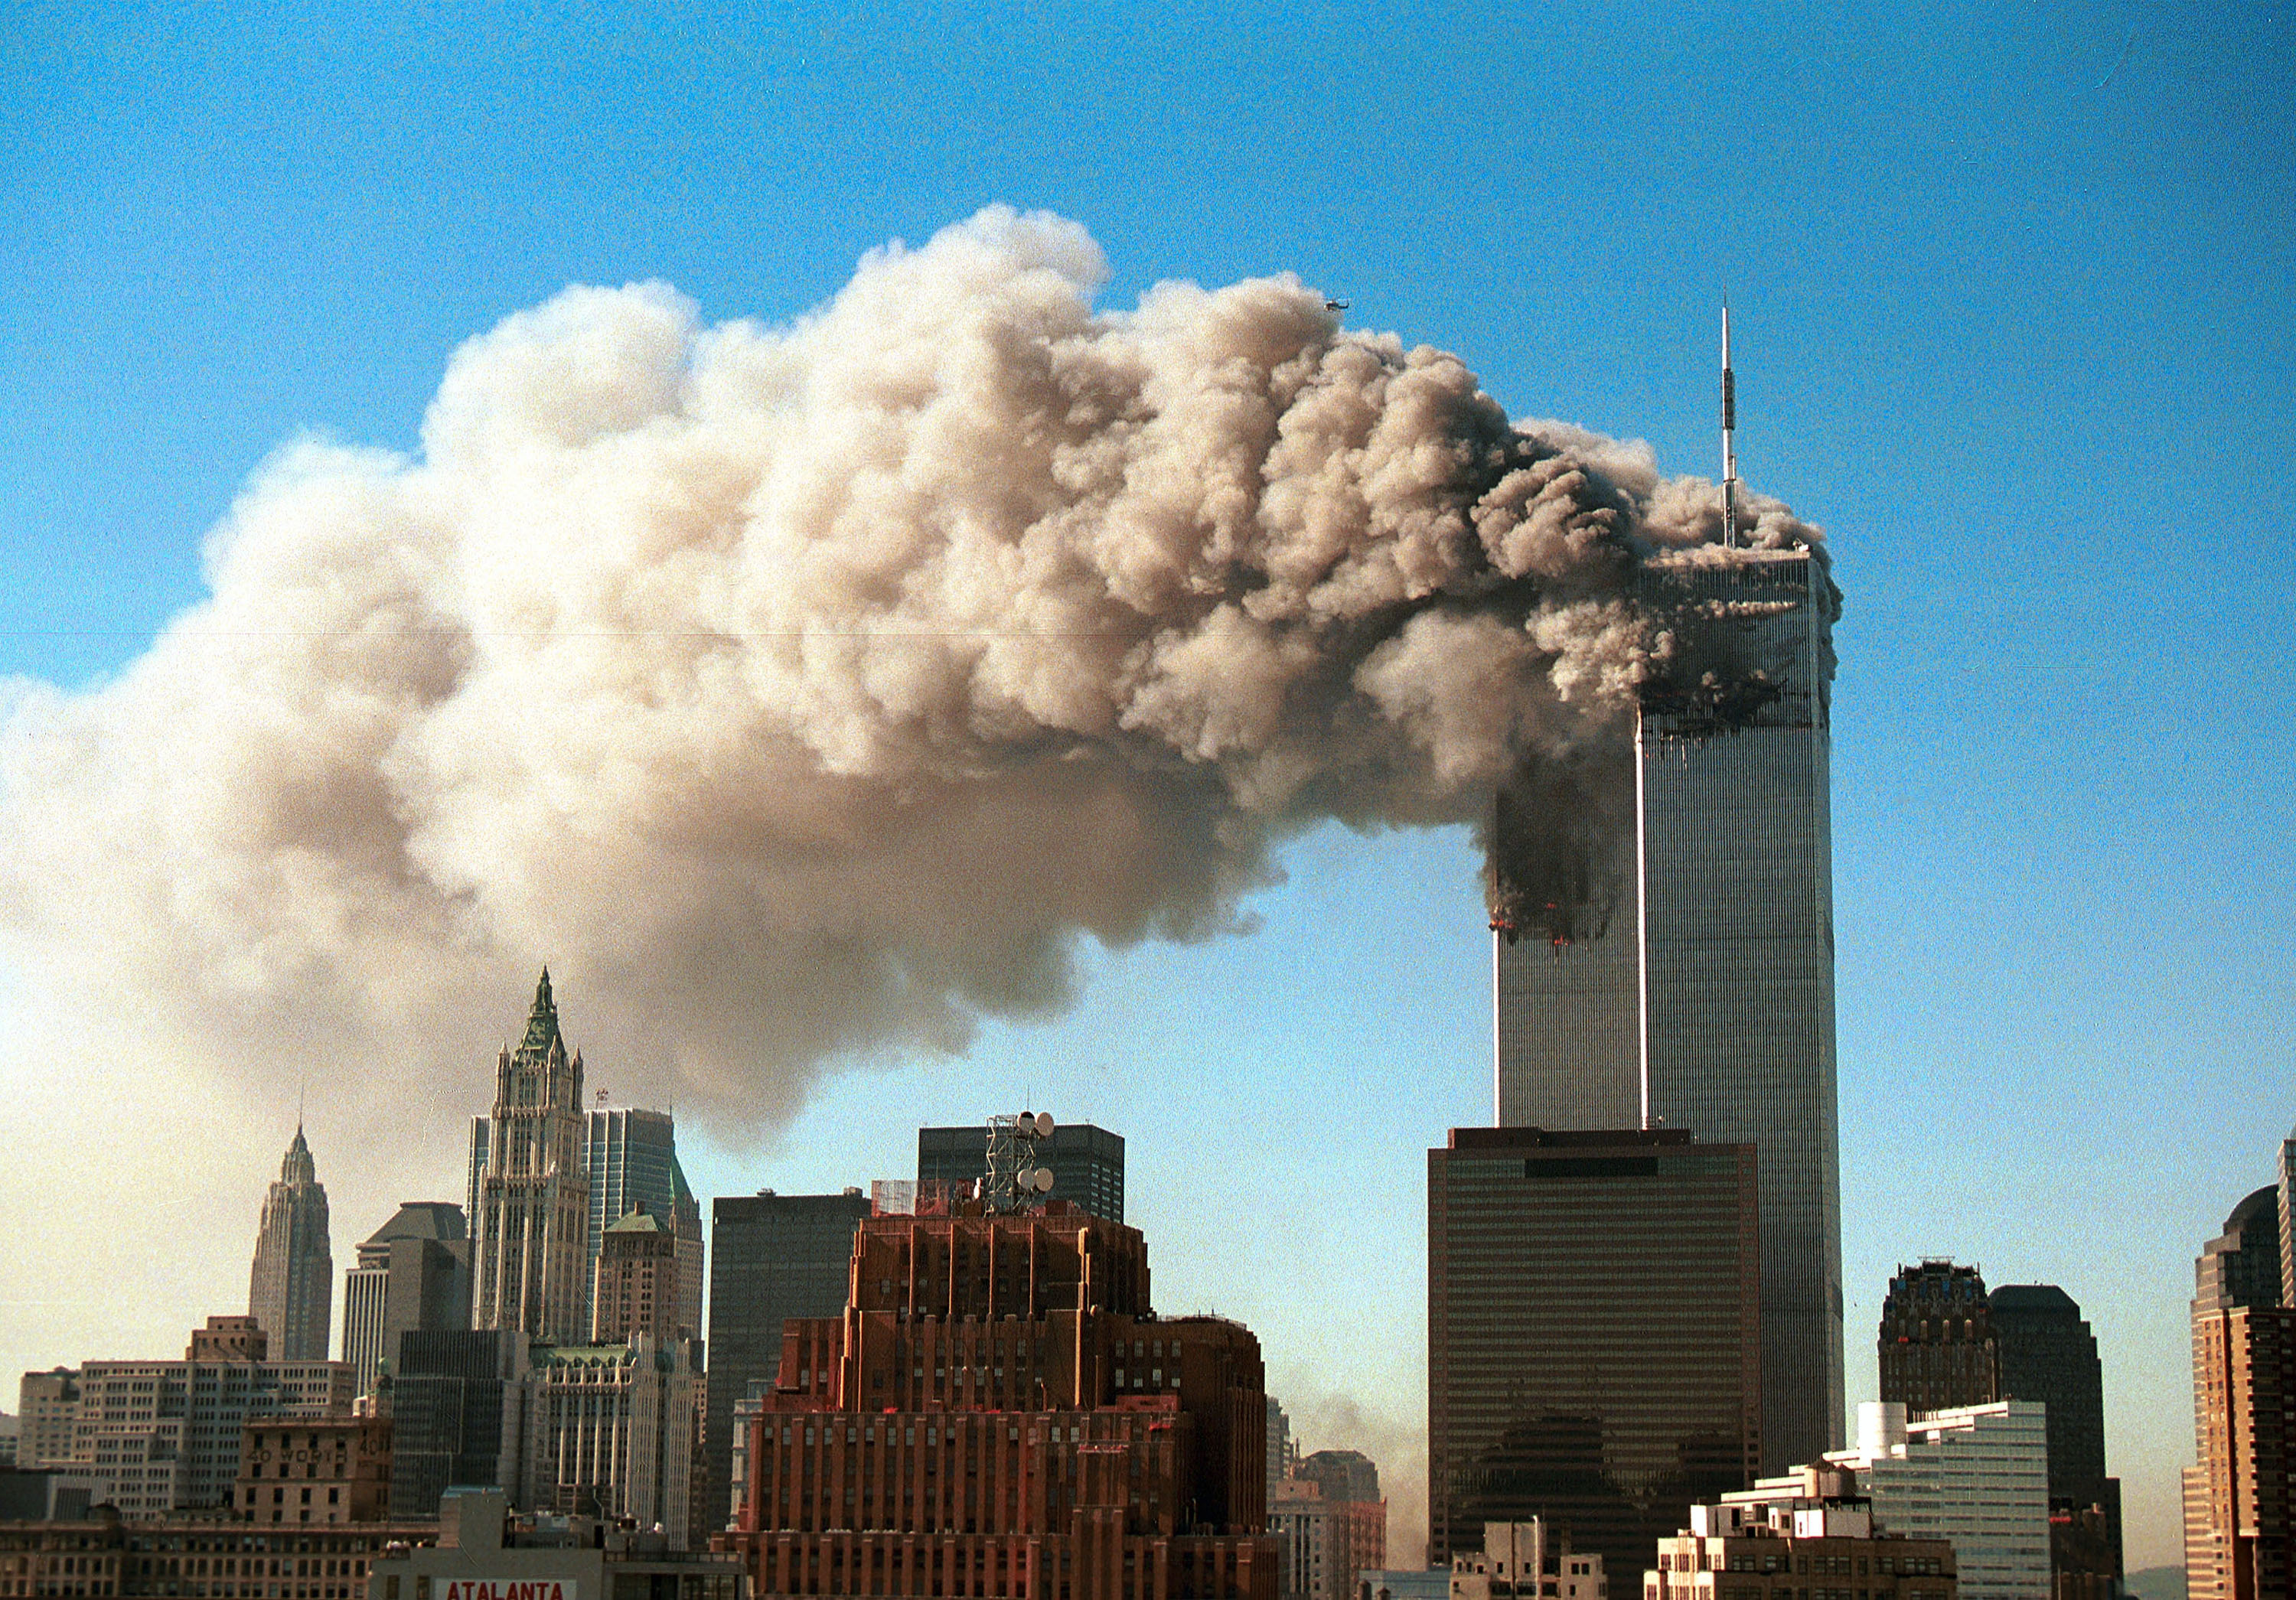 9/11 plane debris removed near WTC